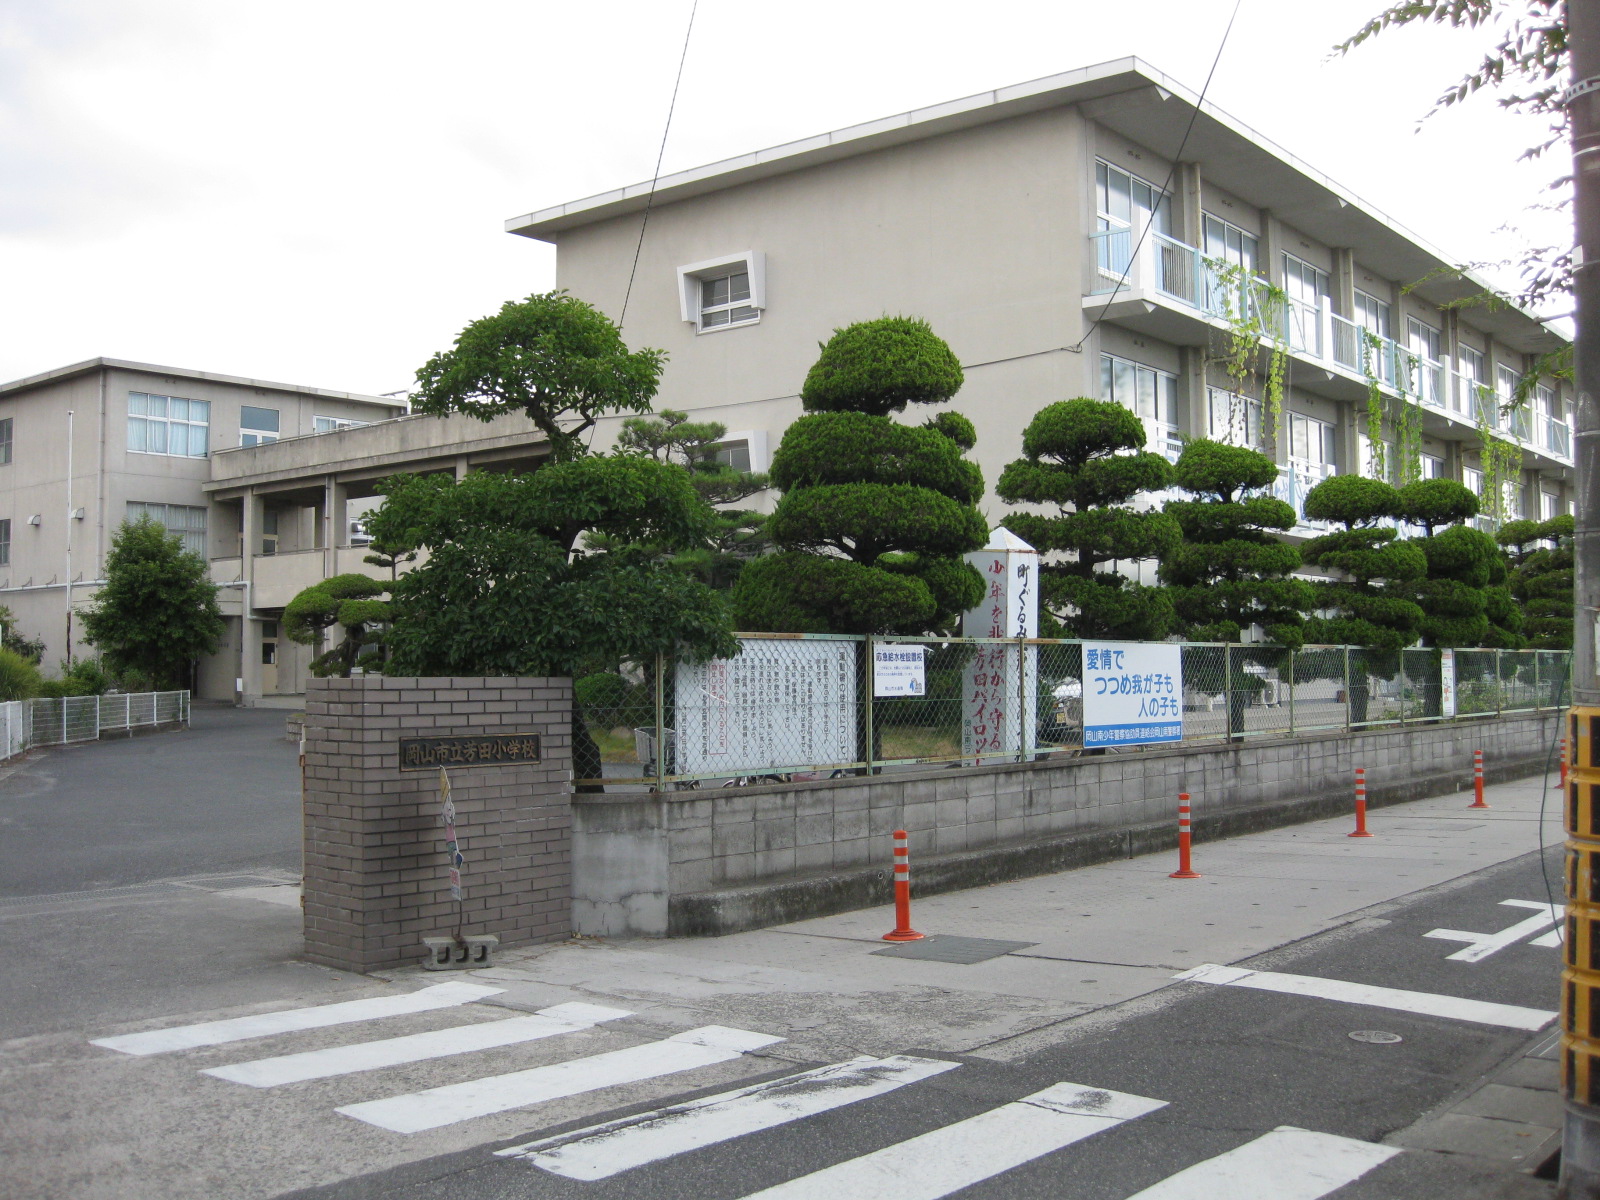 Primary school. 842m to Okayama Yoshida elementary school (elementary school)